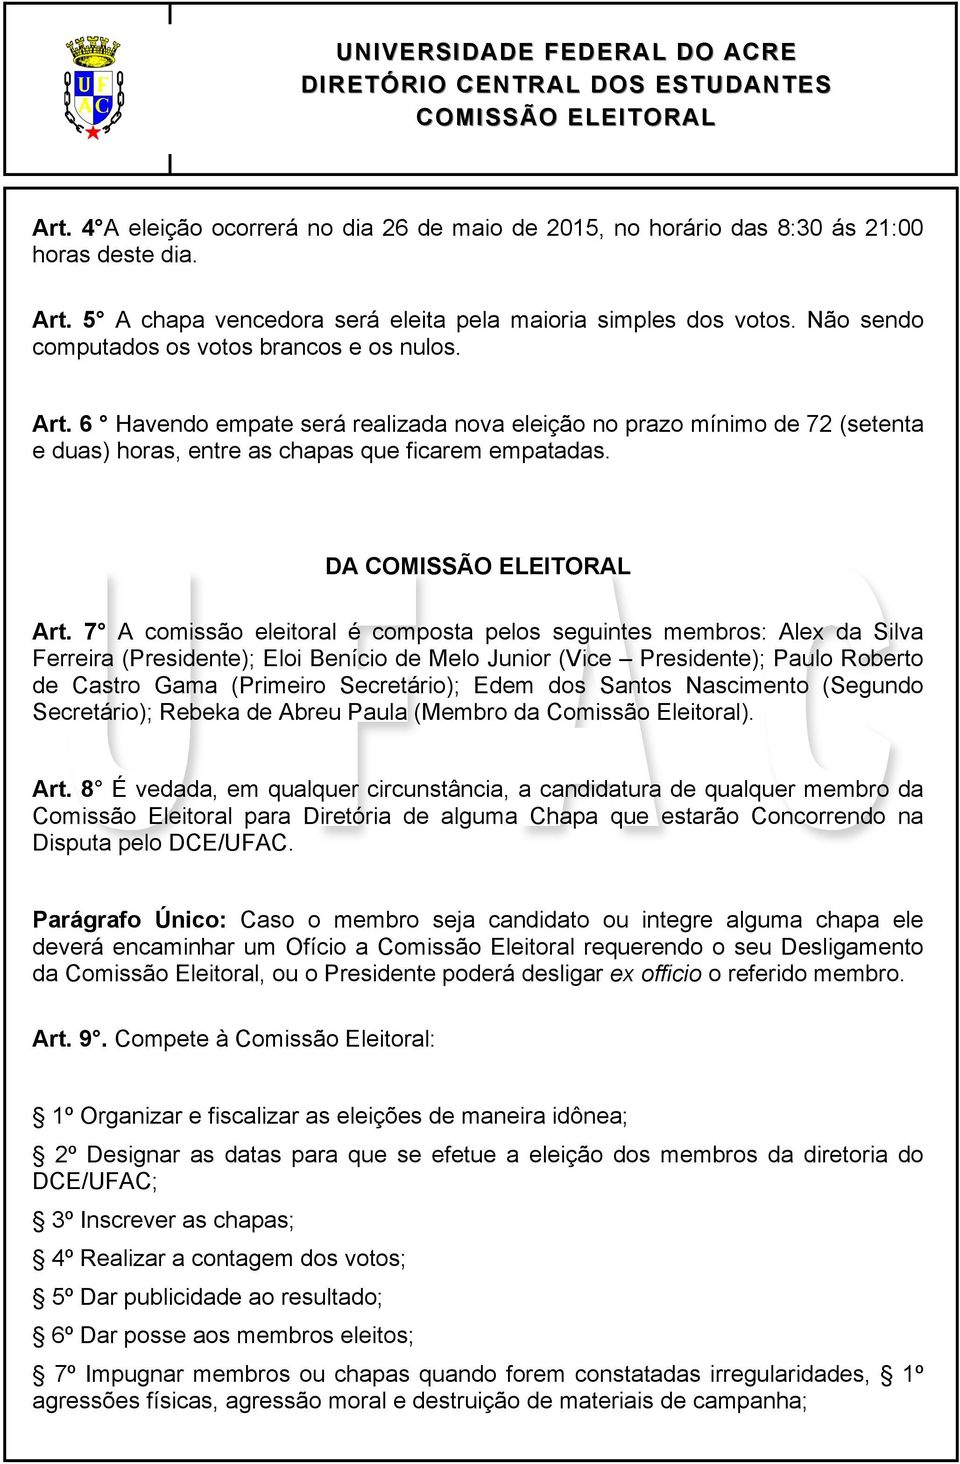 7 A comissão eleitoral é composta pelos seguintes membros: Alex da Silva Ferreira (Presidente); Eloi Benício de Melo Junior (Vice Presidente); Paulo Roberto de Castro Gama (Primeiro Secretário); Edem